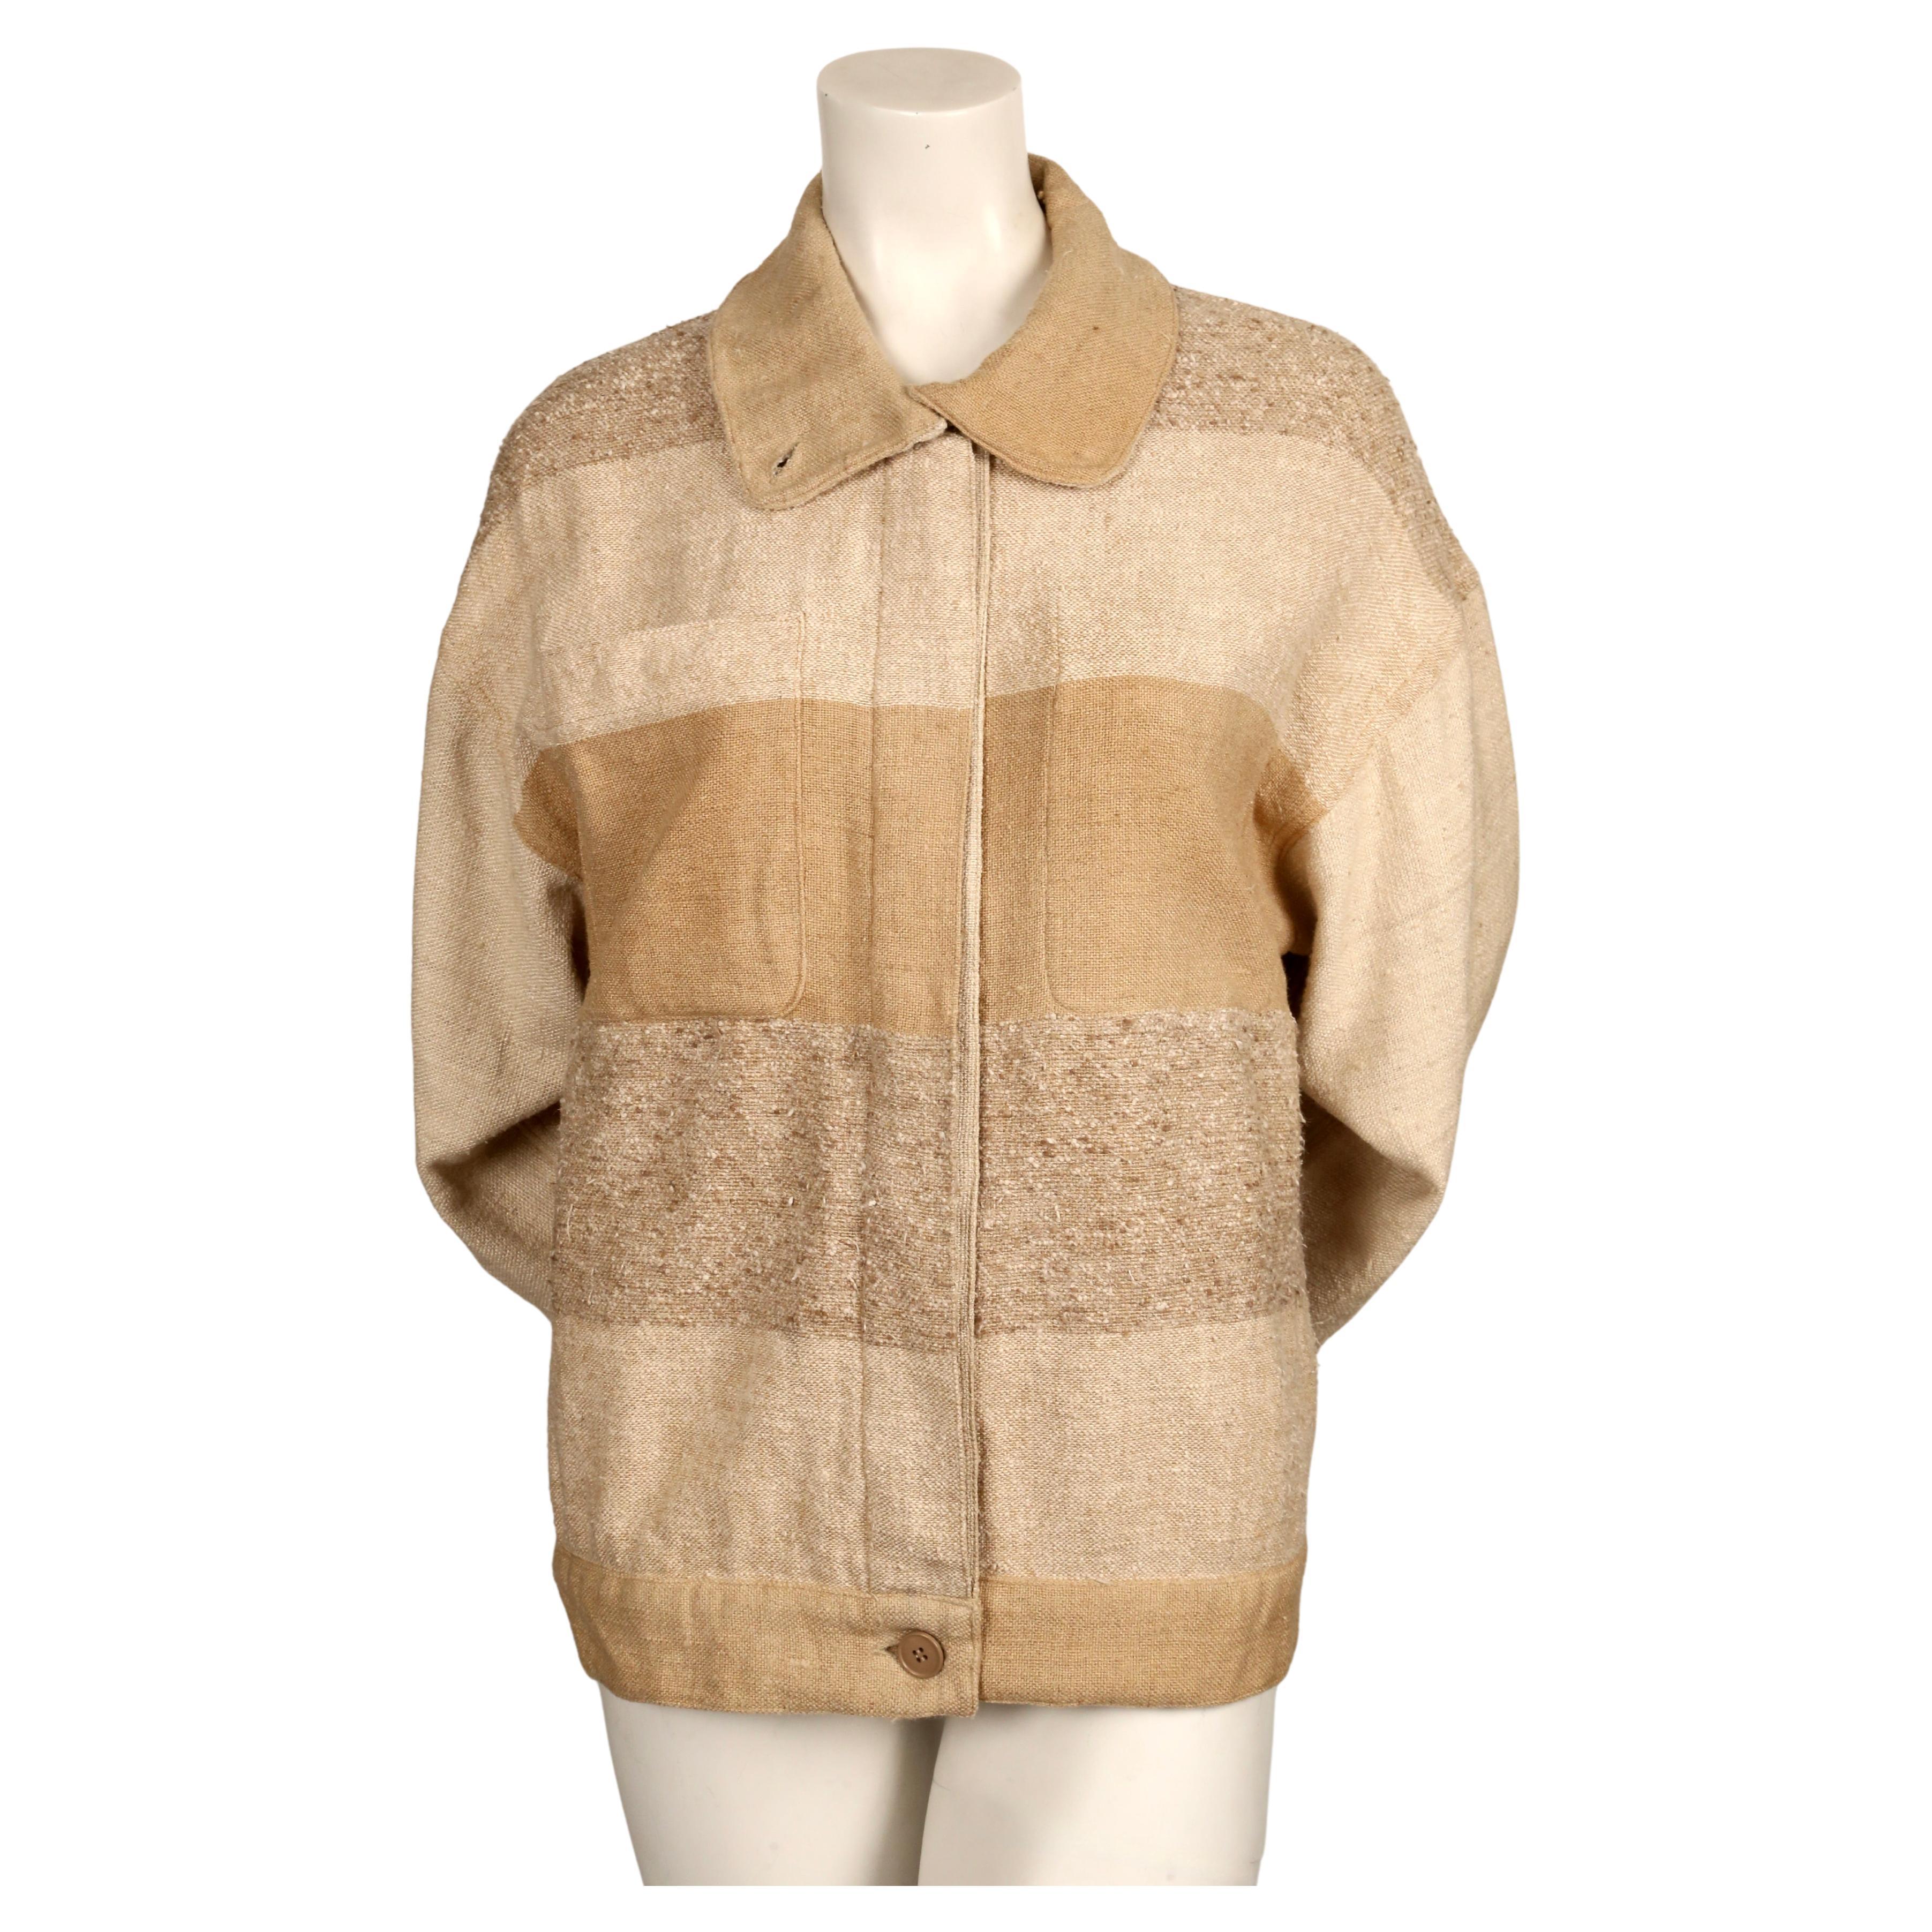 Très rare veste en soie grège à rayures, de couleur terre, dessinée par Jean Charles de Castelbajac pour KO and CO, datant des années 1970. Il n'y a pas de taille indiquée mais ce modèle convient de préférence à une taille XS à M. Mesures